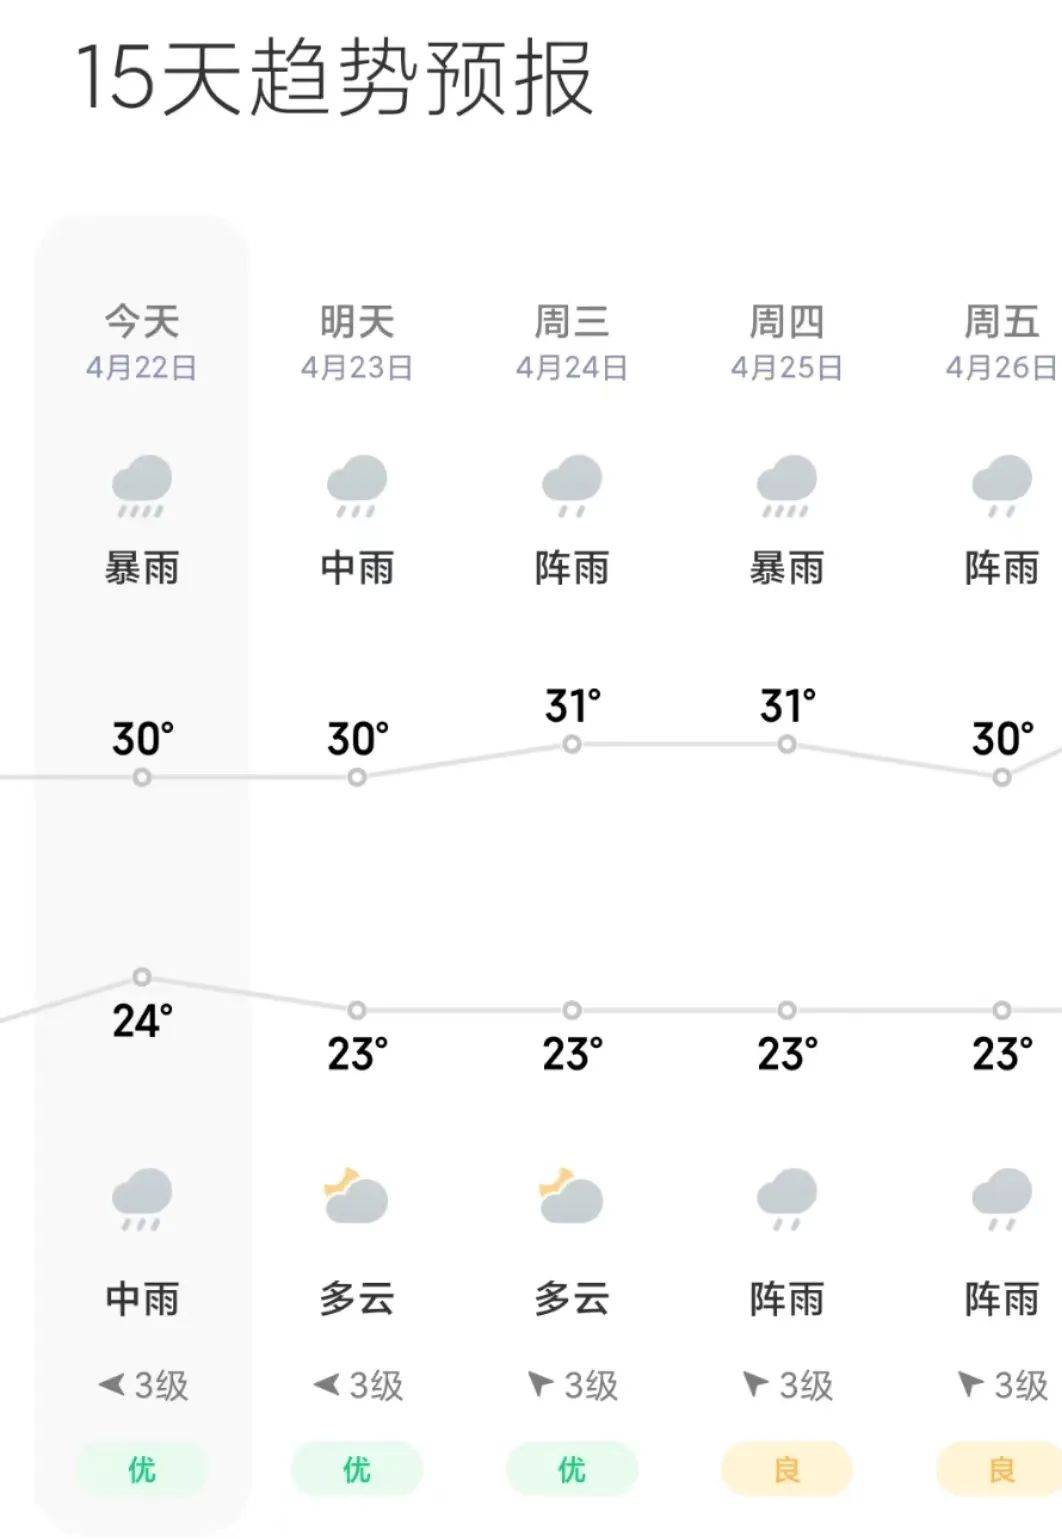 湛江强对流天气持续,更凶猛的还在后面…